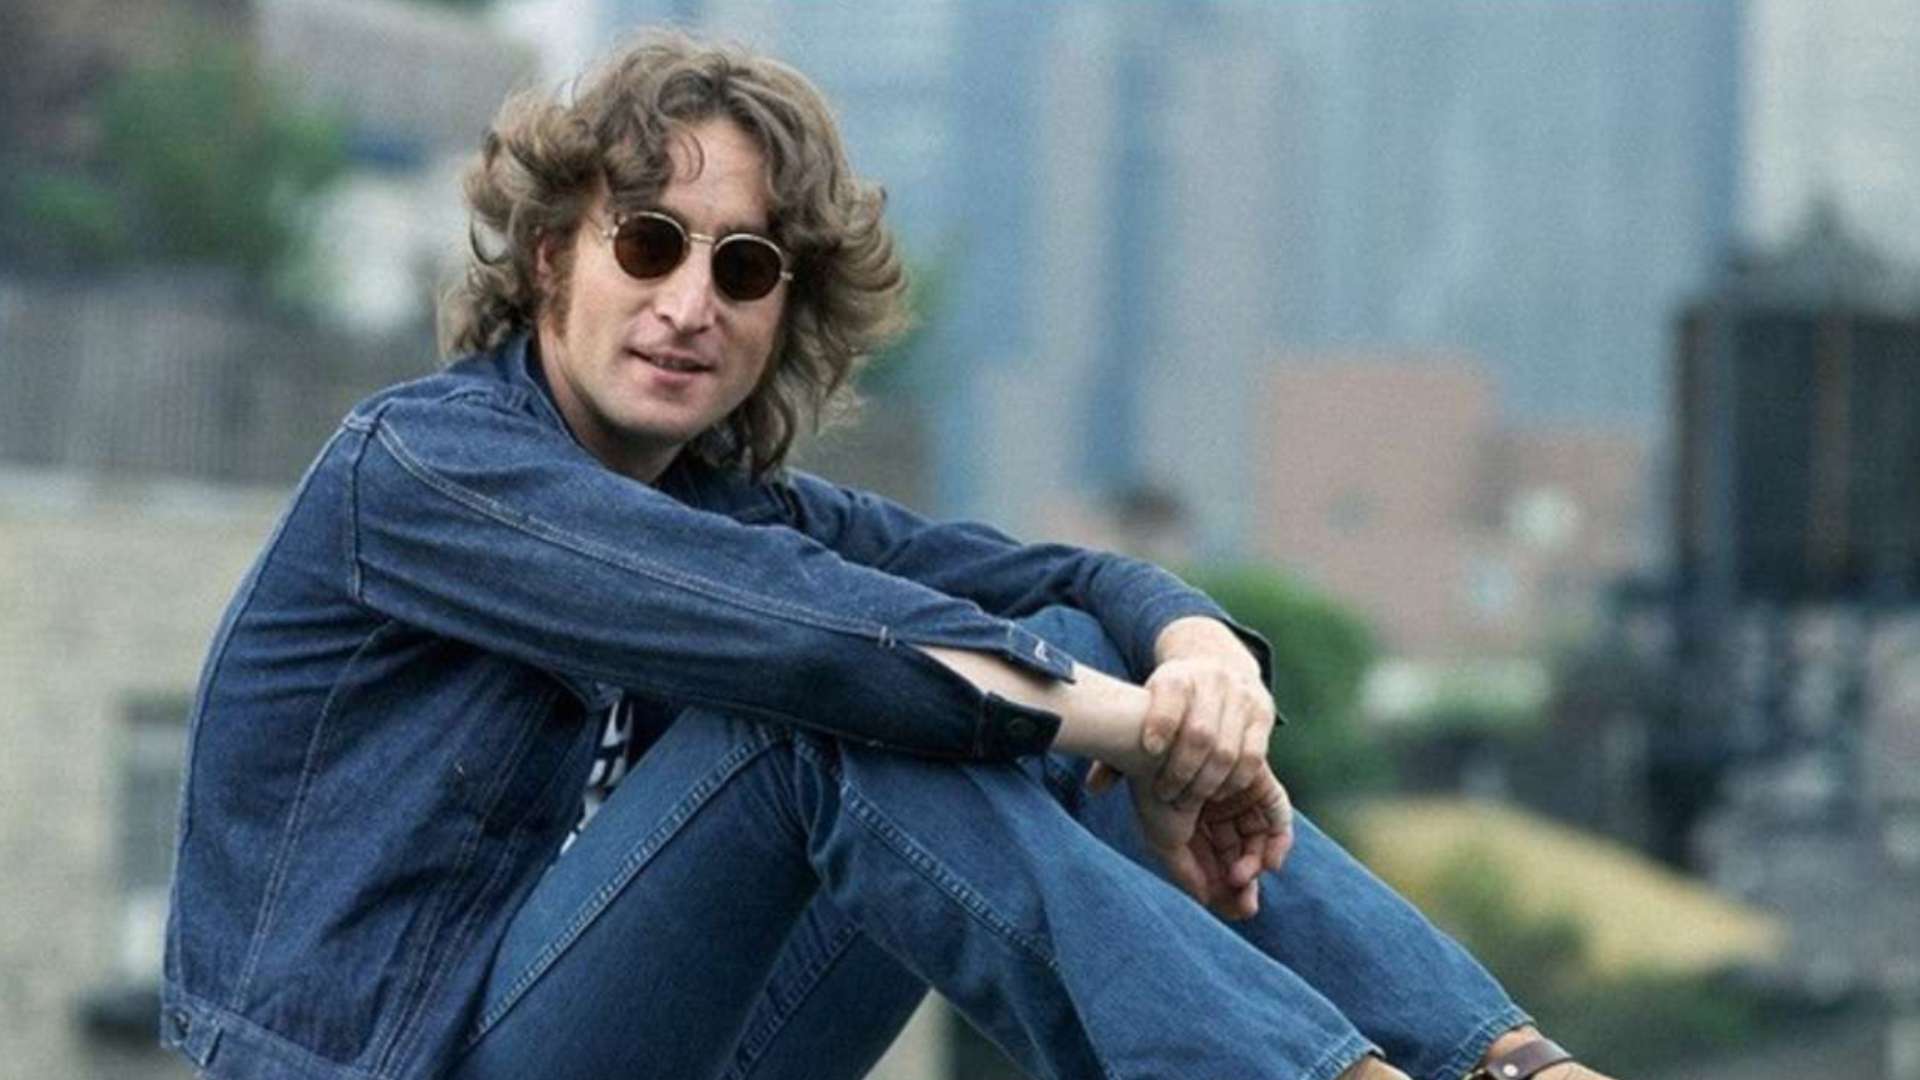 John Lennon celebrity murders